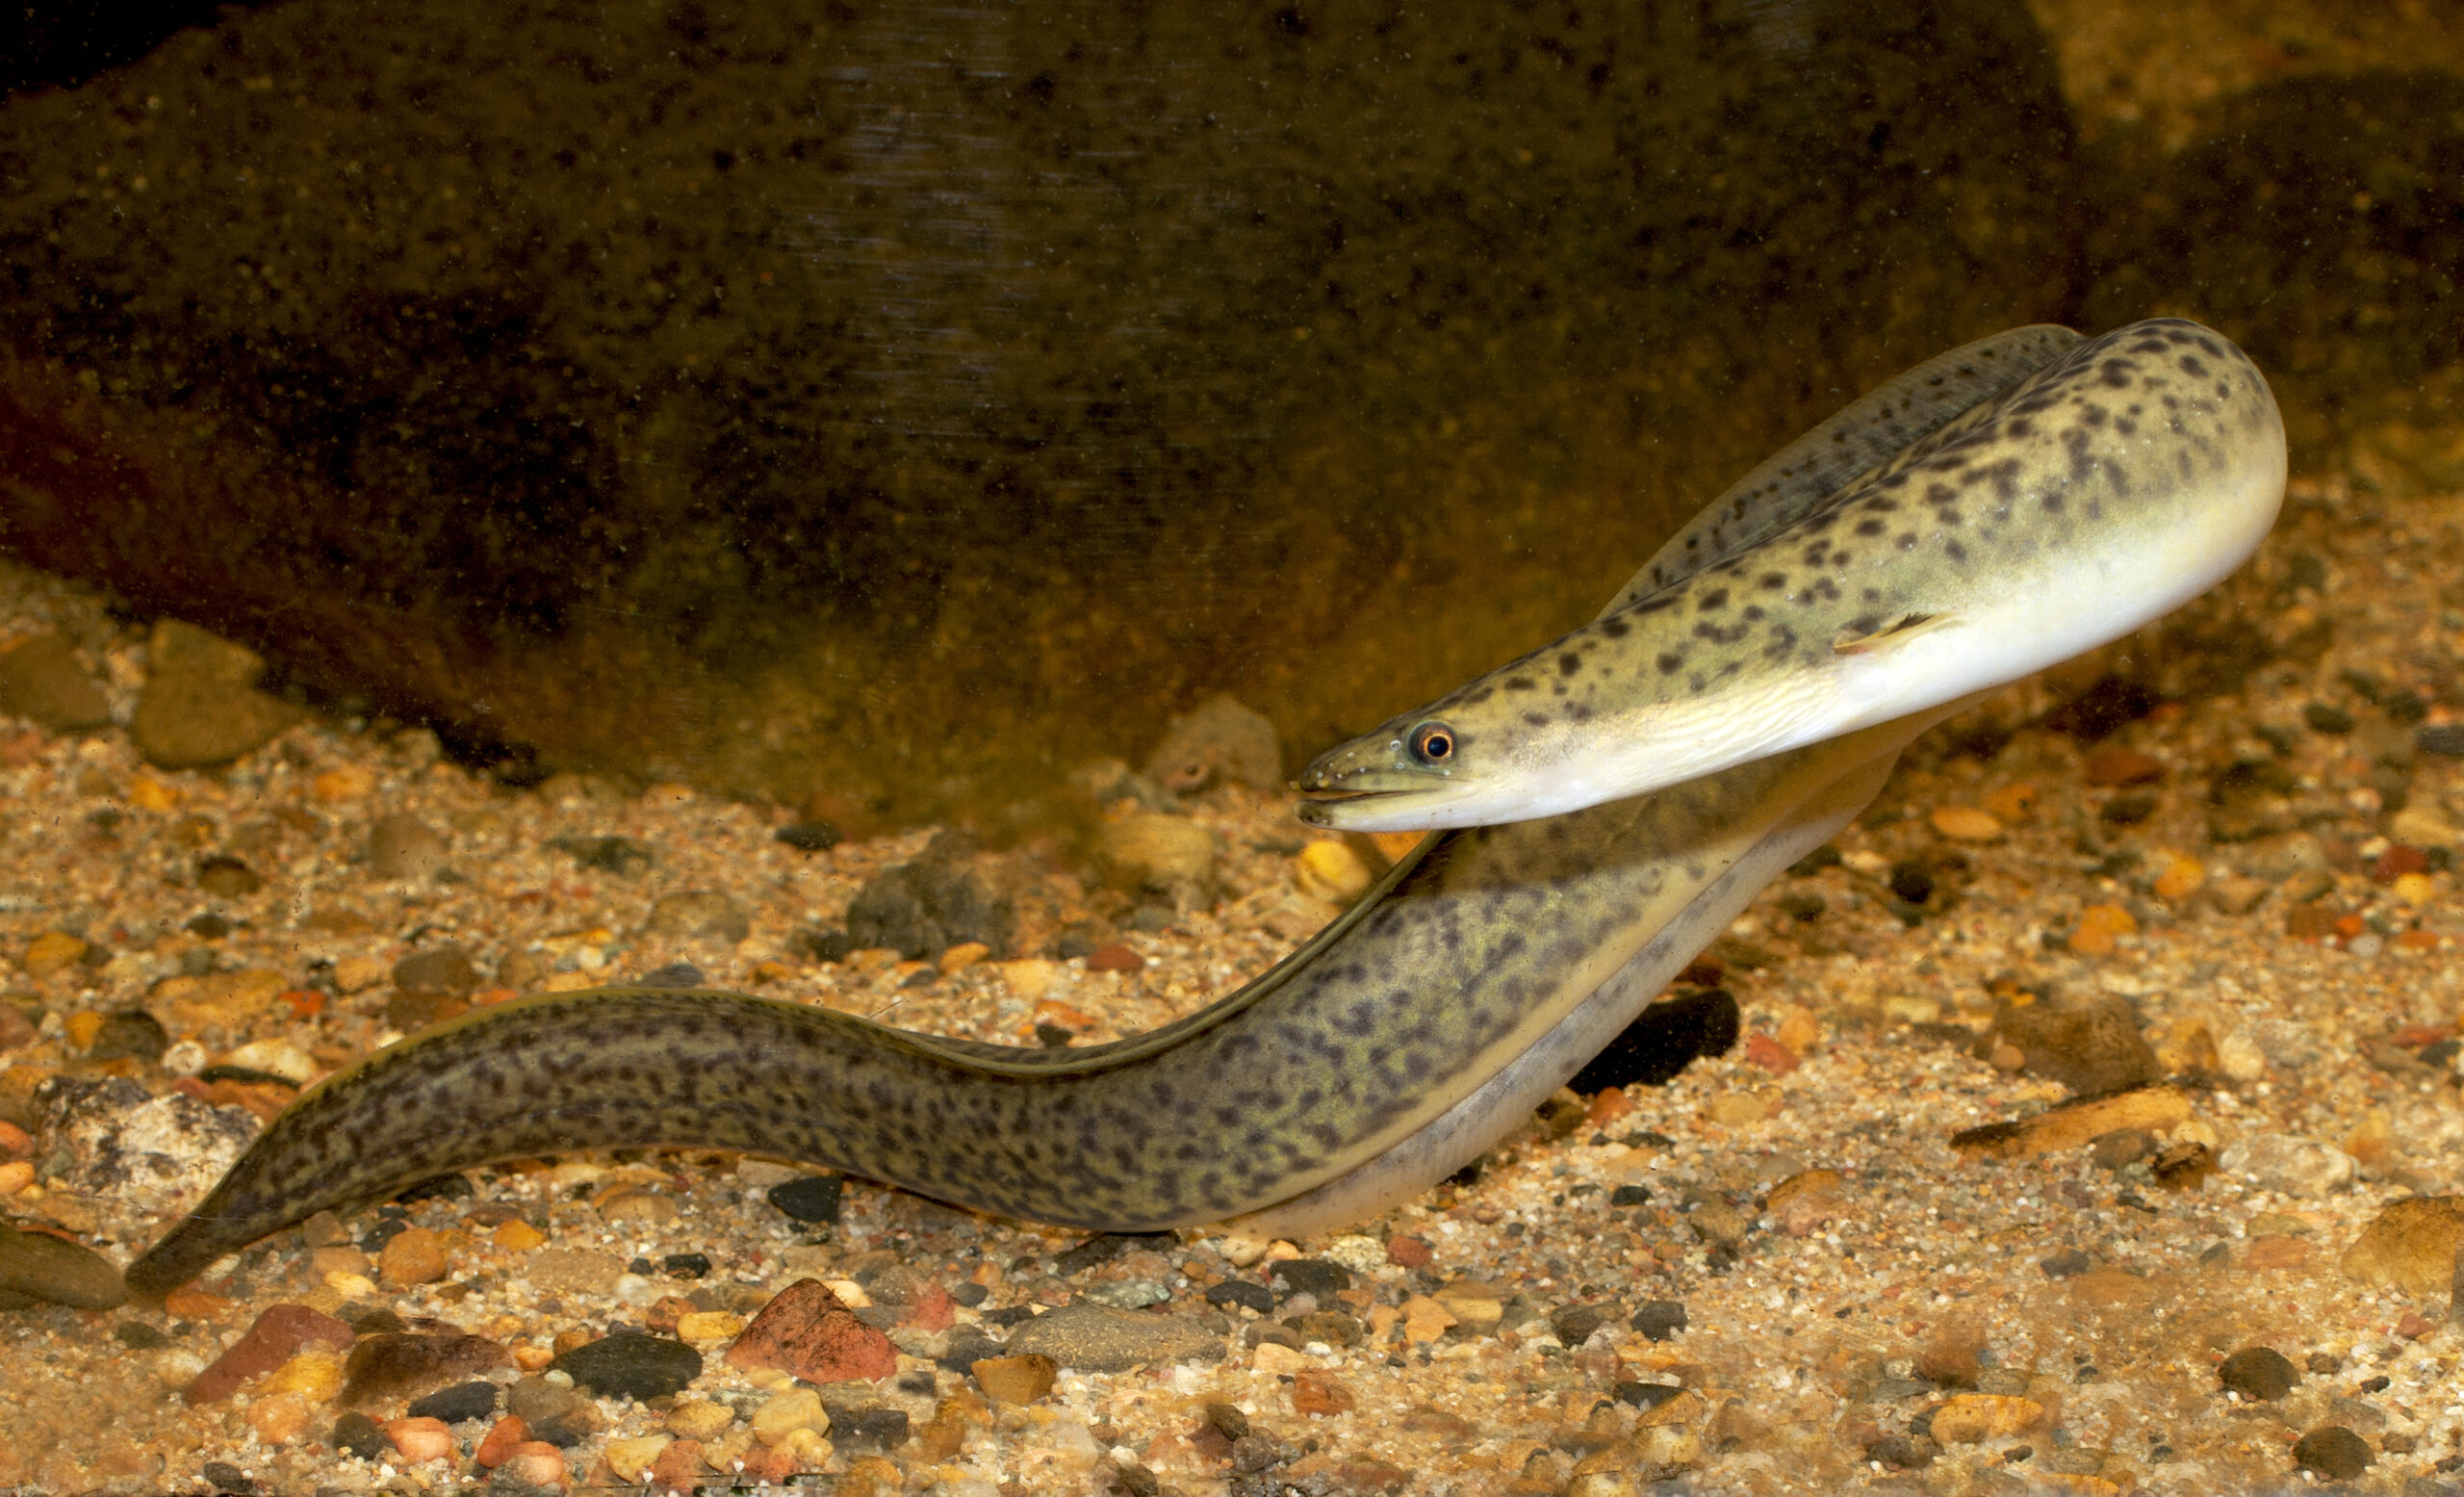 Long-finned eel whole body. Source: Gunther Schmida